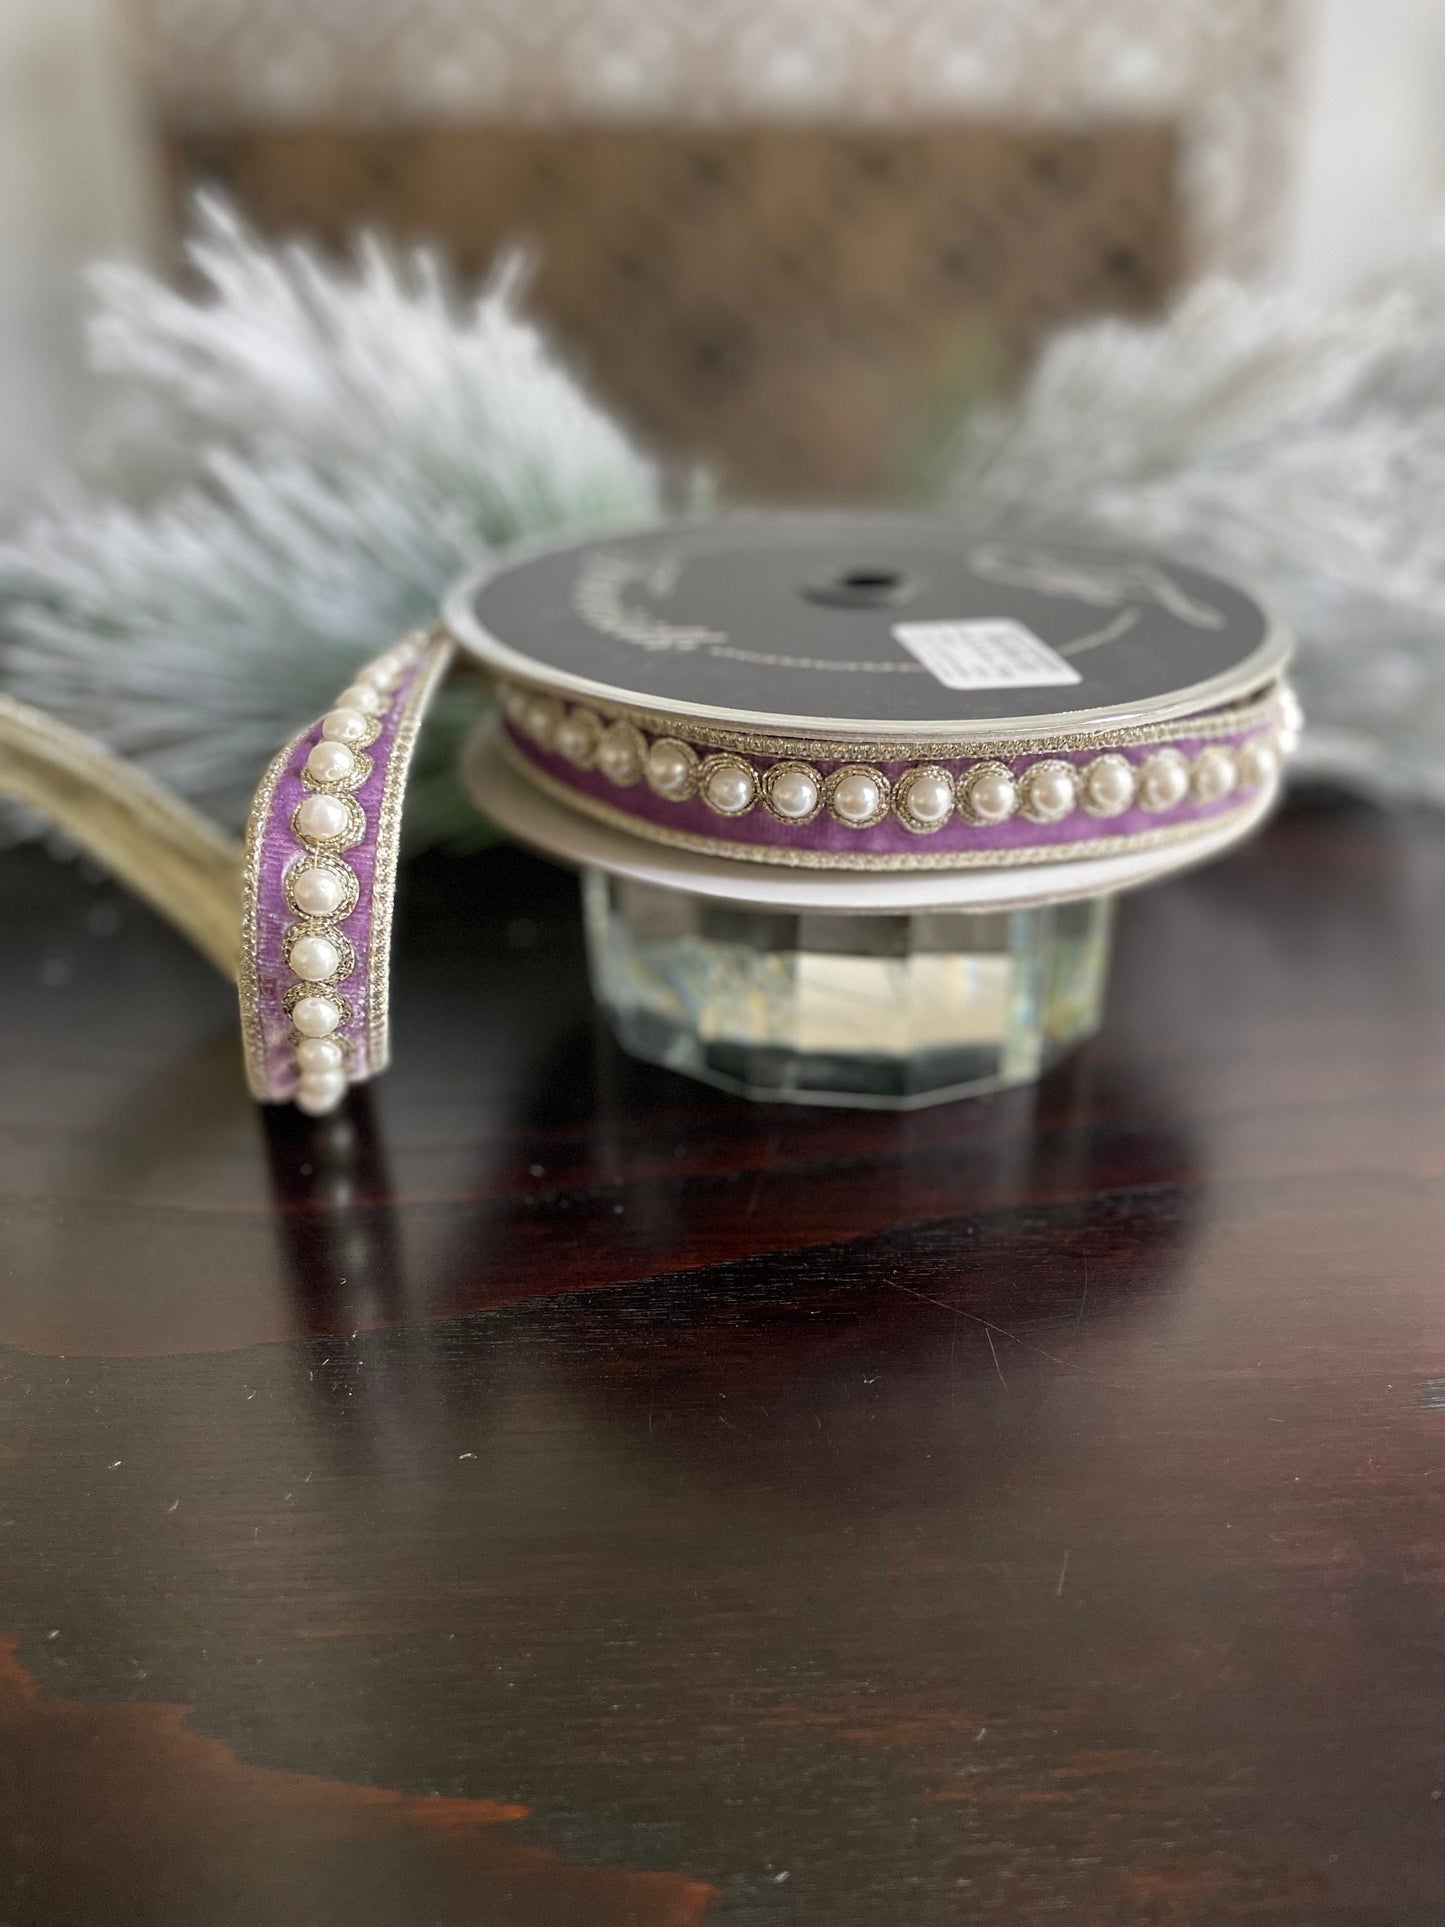 1” x 5 yds. Designer pearl borders velvet lavender ribbon. Wired. Farrisilk.